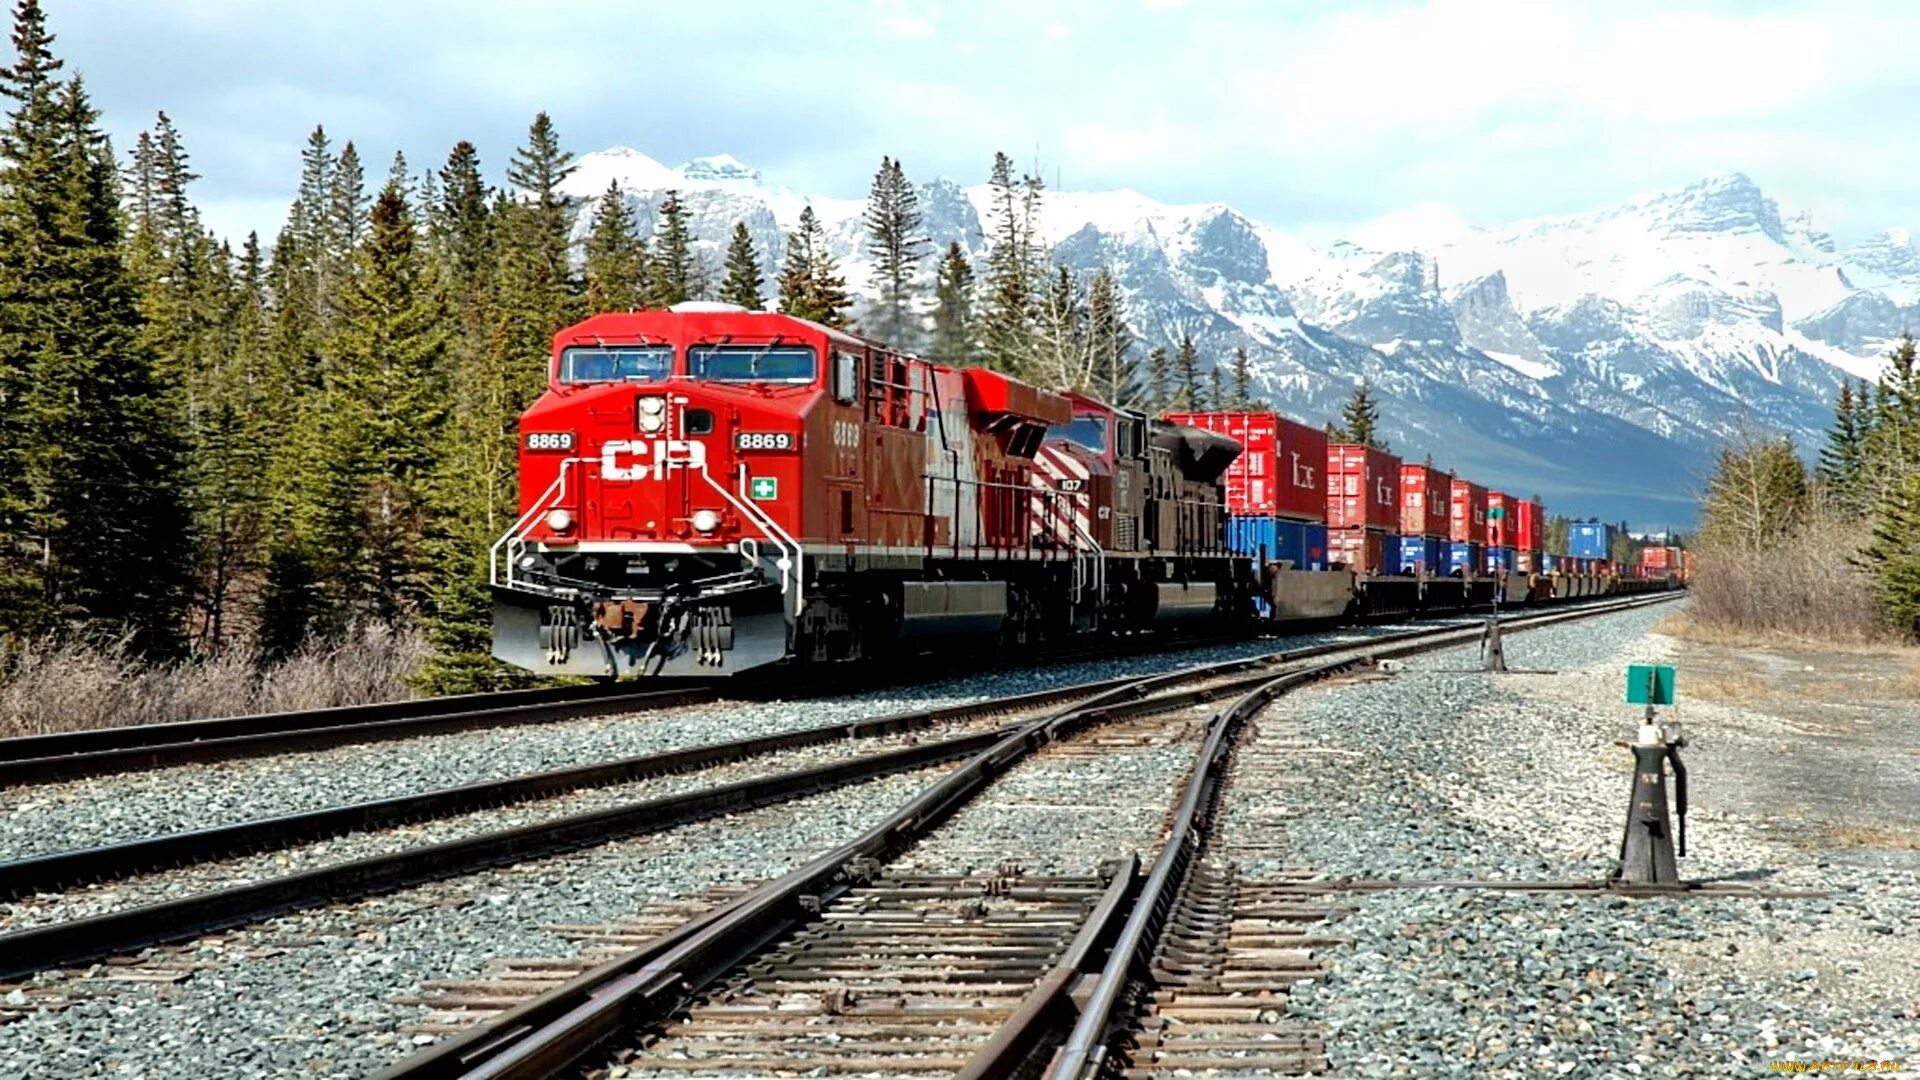 Видео дороги поезда. Канадская Тихоокеанская железная дорога. Российские поезда. Поезд в горах. Поезд РЖД.